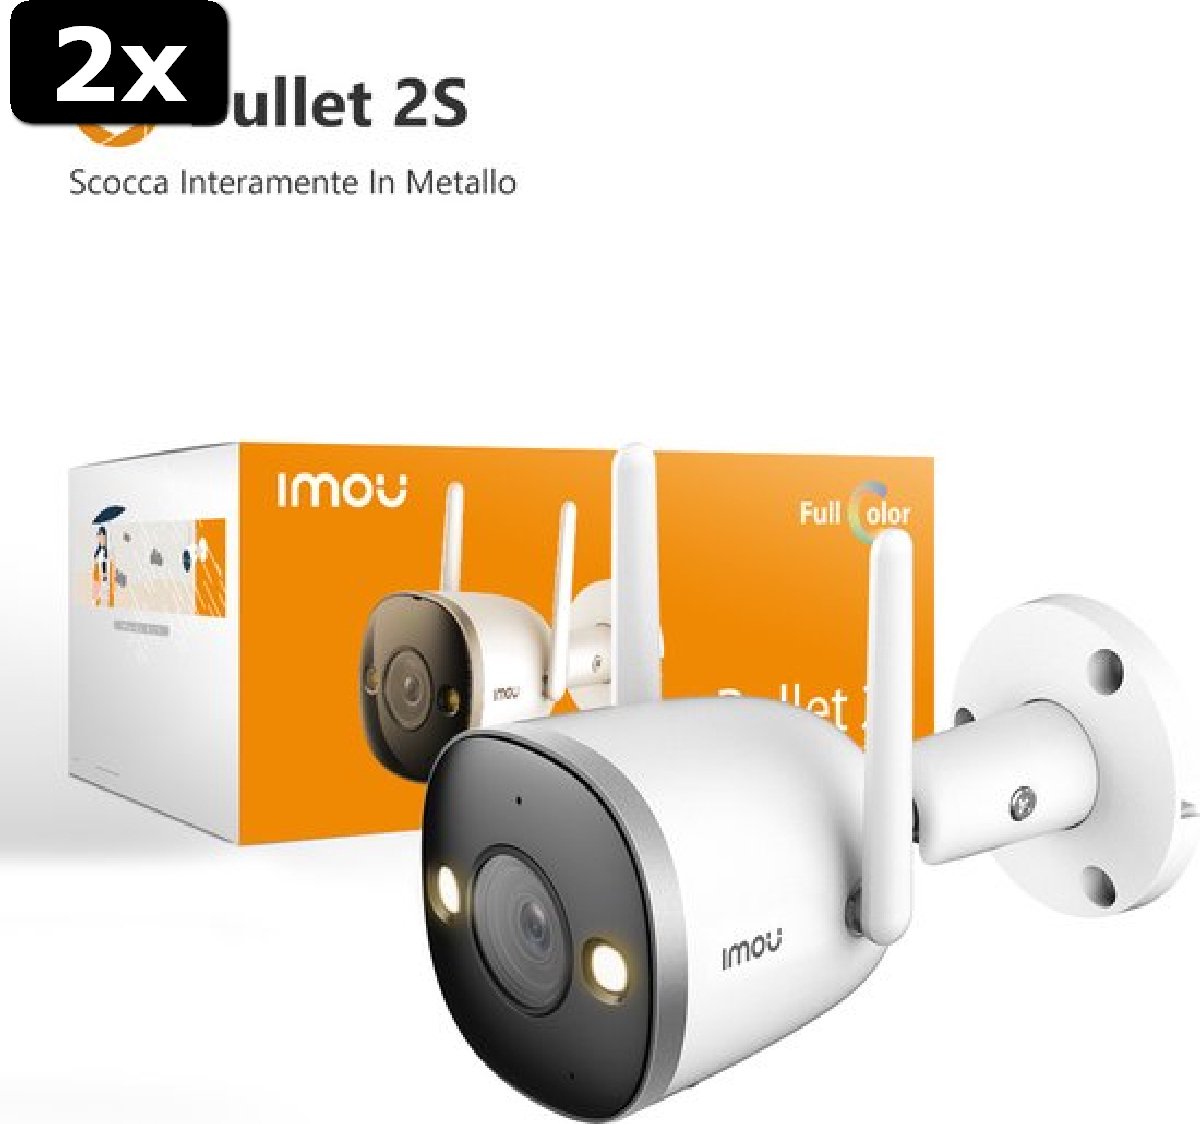 2x Imou Bullet 2S IP-camera - 2MP - Voor buiten - Full HD (1080p)